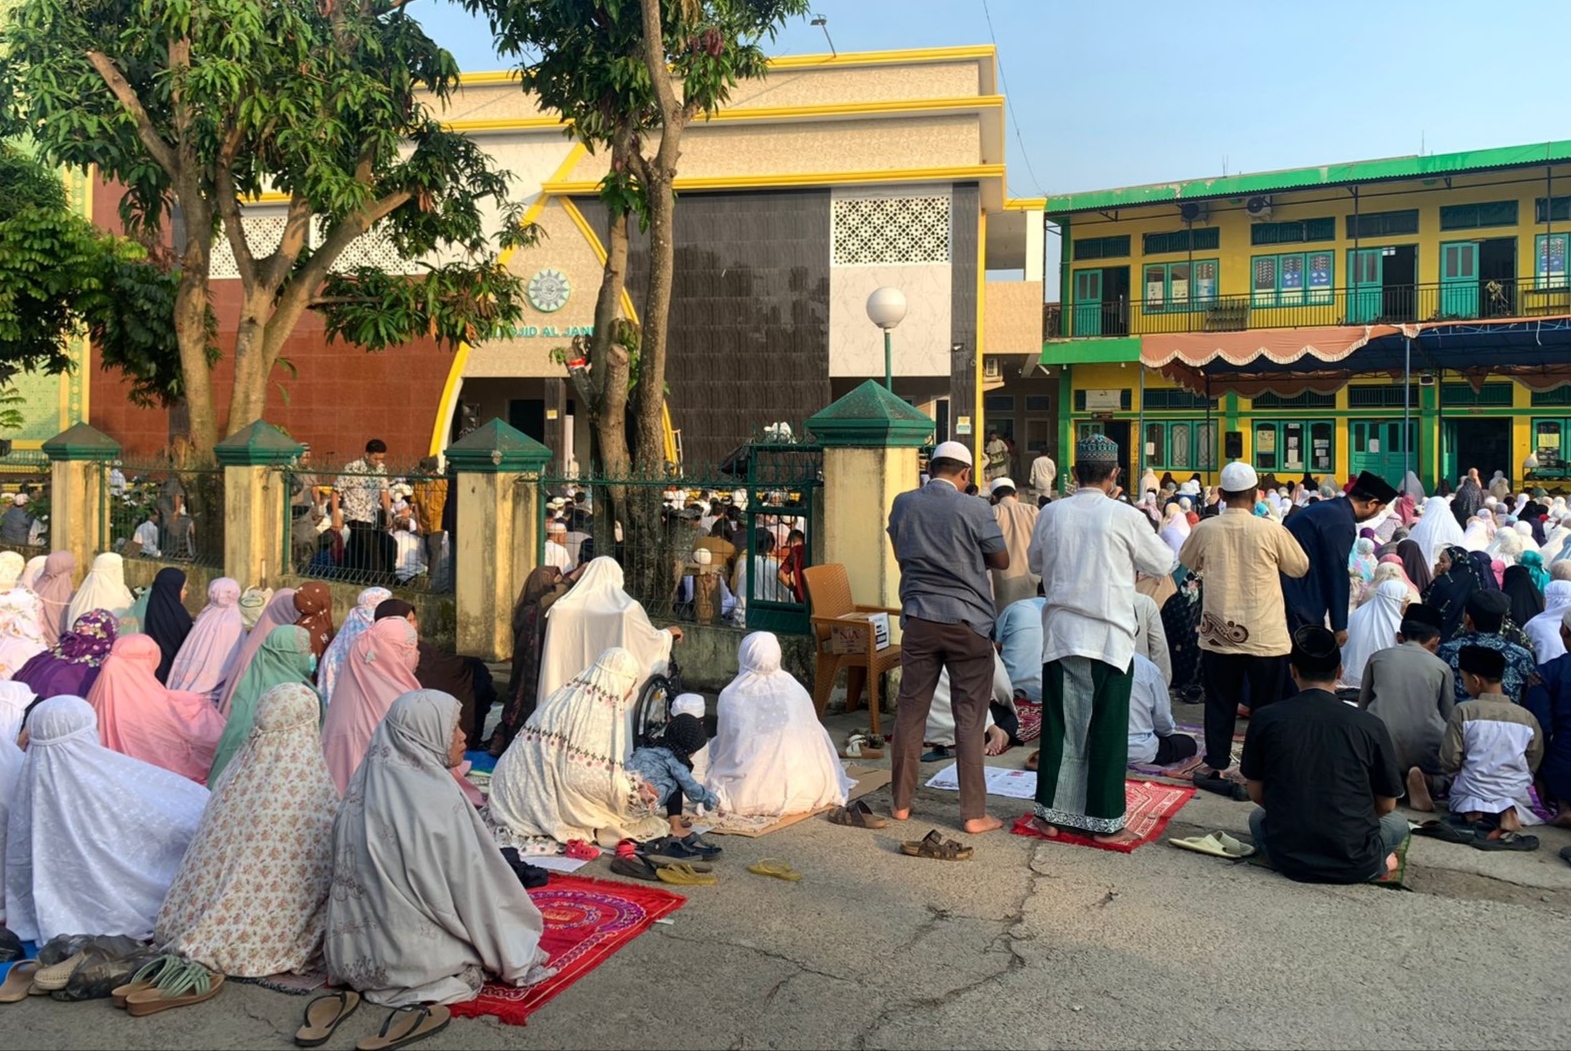 Ribuan Warga Muhammadiyah Laksanakan Solat Ied Di Masjid Al Jannah Sako